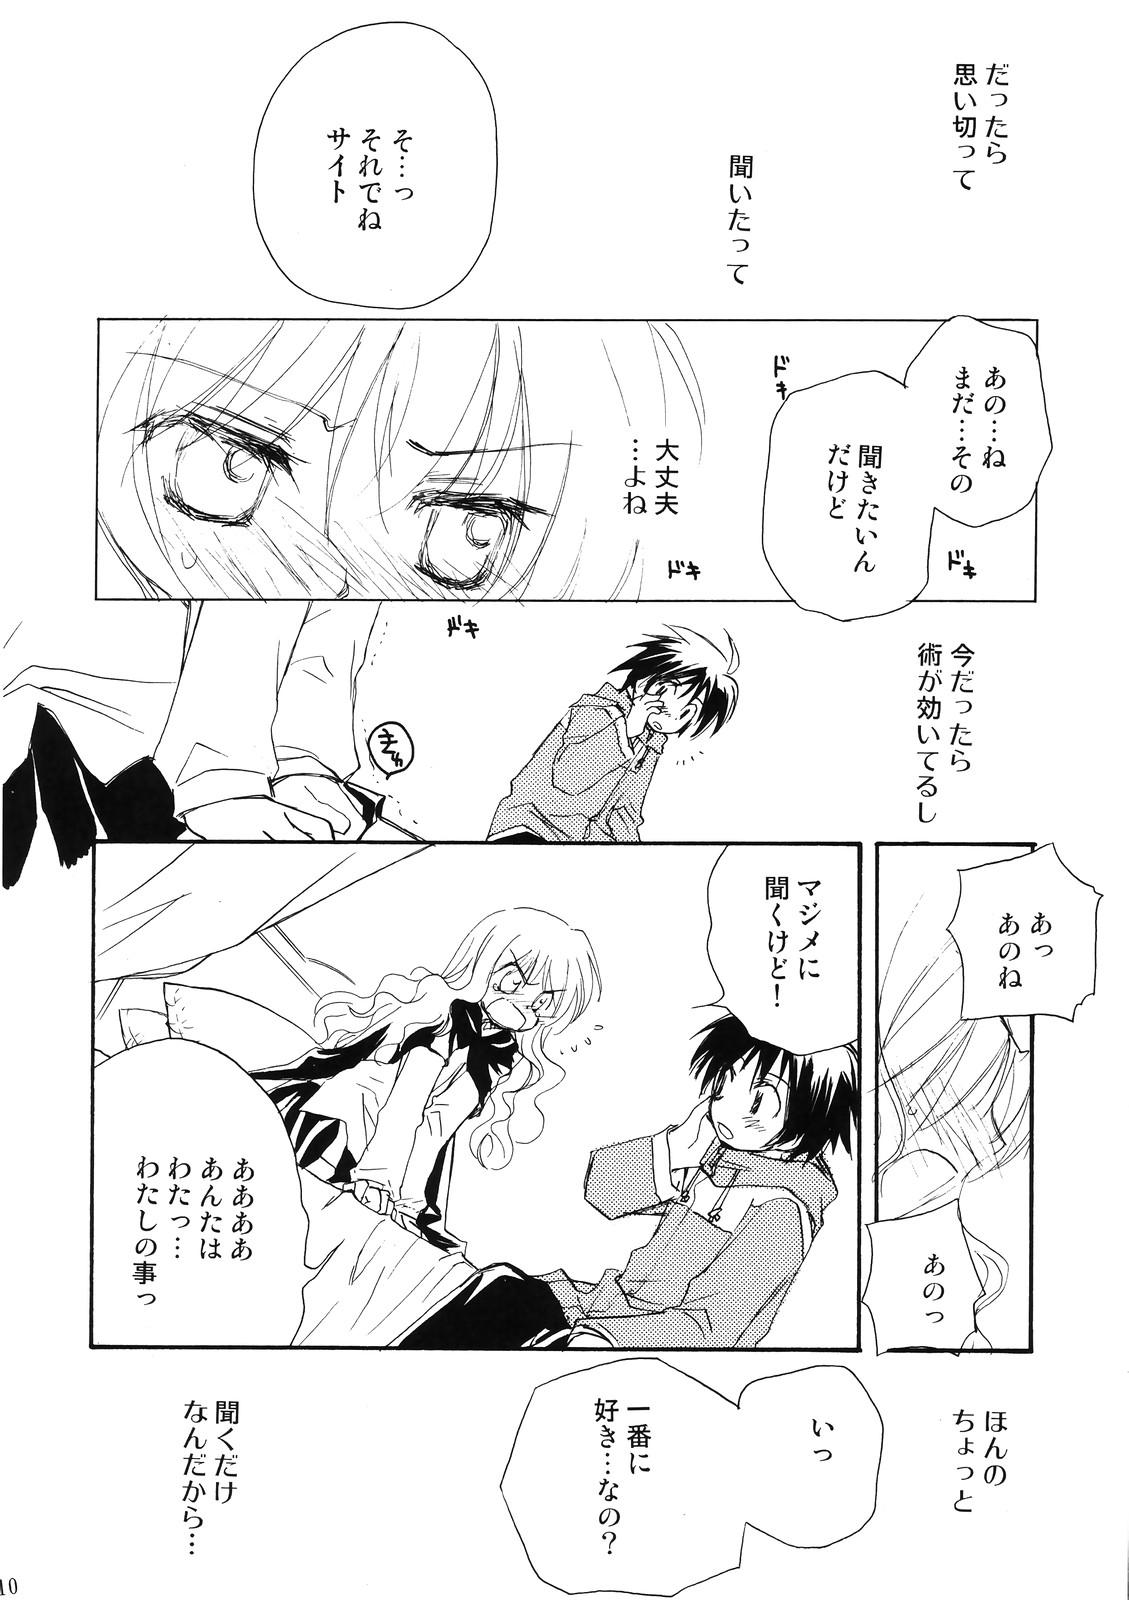 Butt Sex Suki tte itte tte itte! - Zero no tsukaima Brother - Page 9